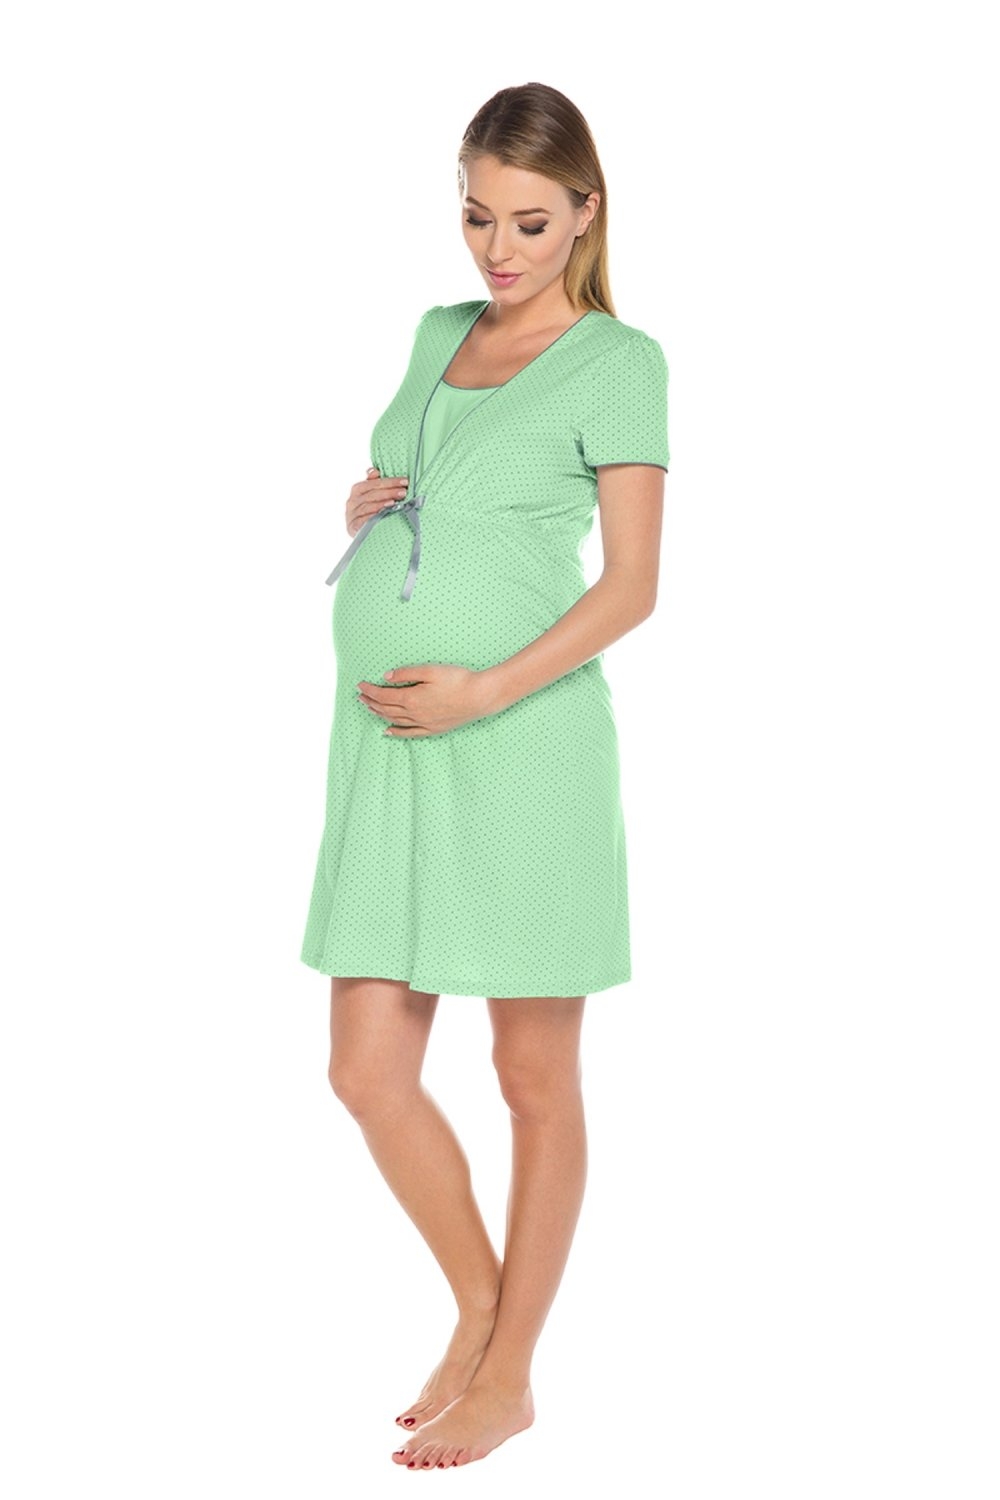 Dámske tehotenské prádlo Felicita green